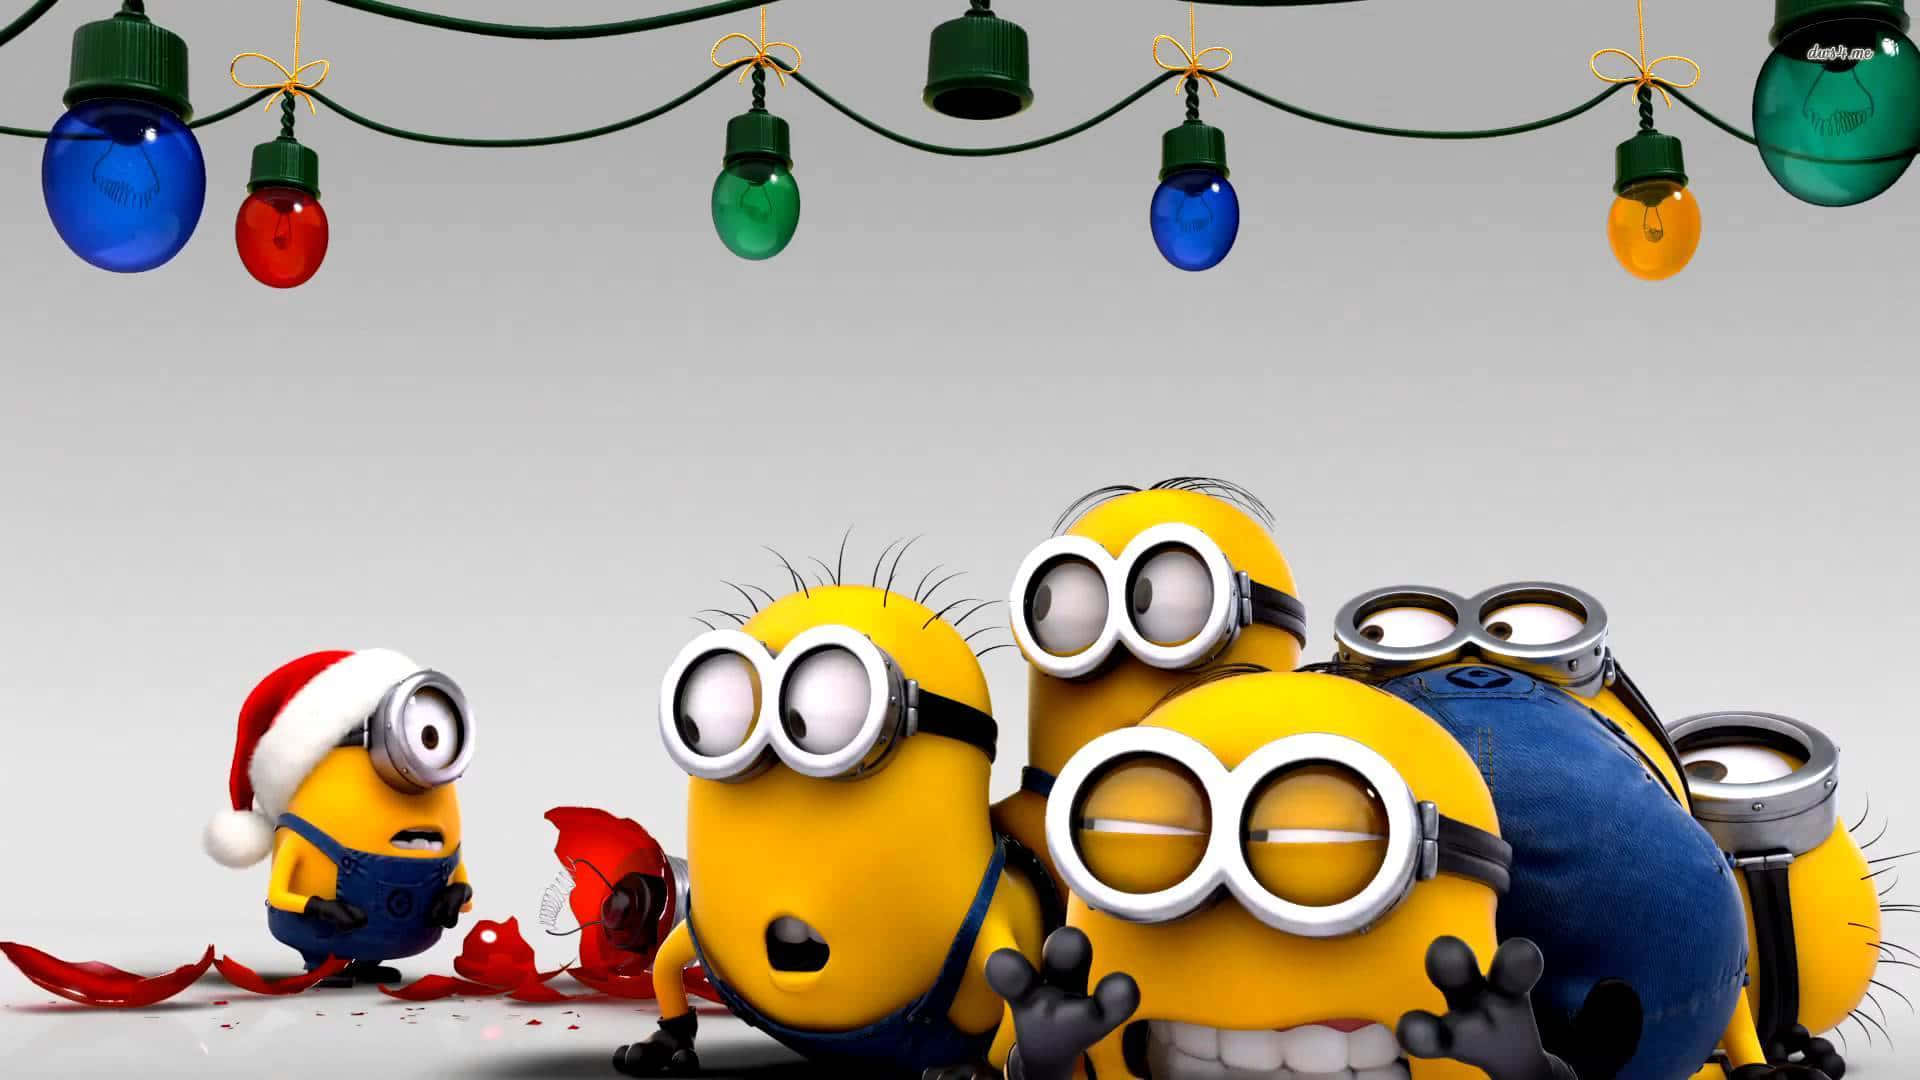 Weihnachtlichecartoon-bild Von Lustigen, Gelben Minions Aus 